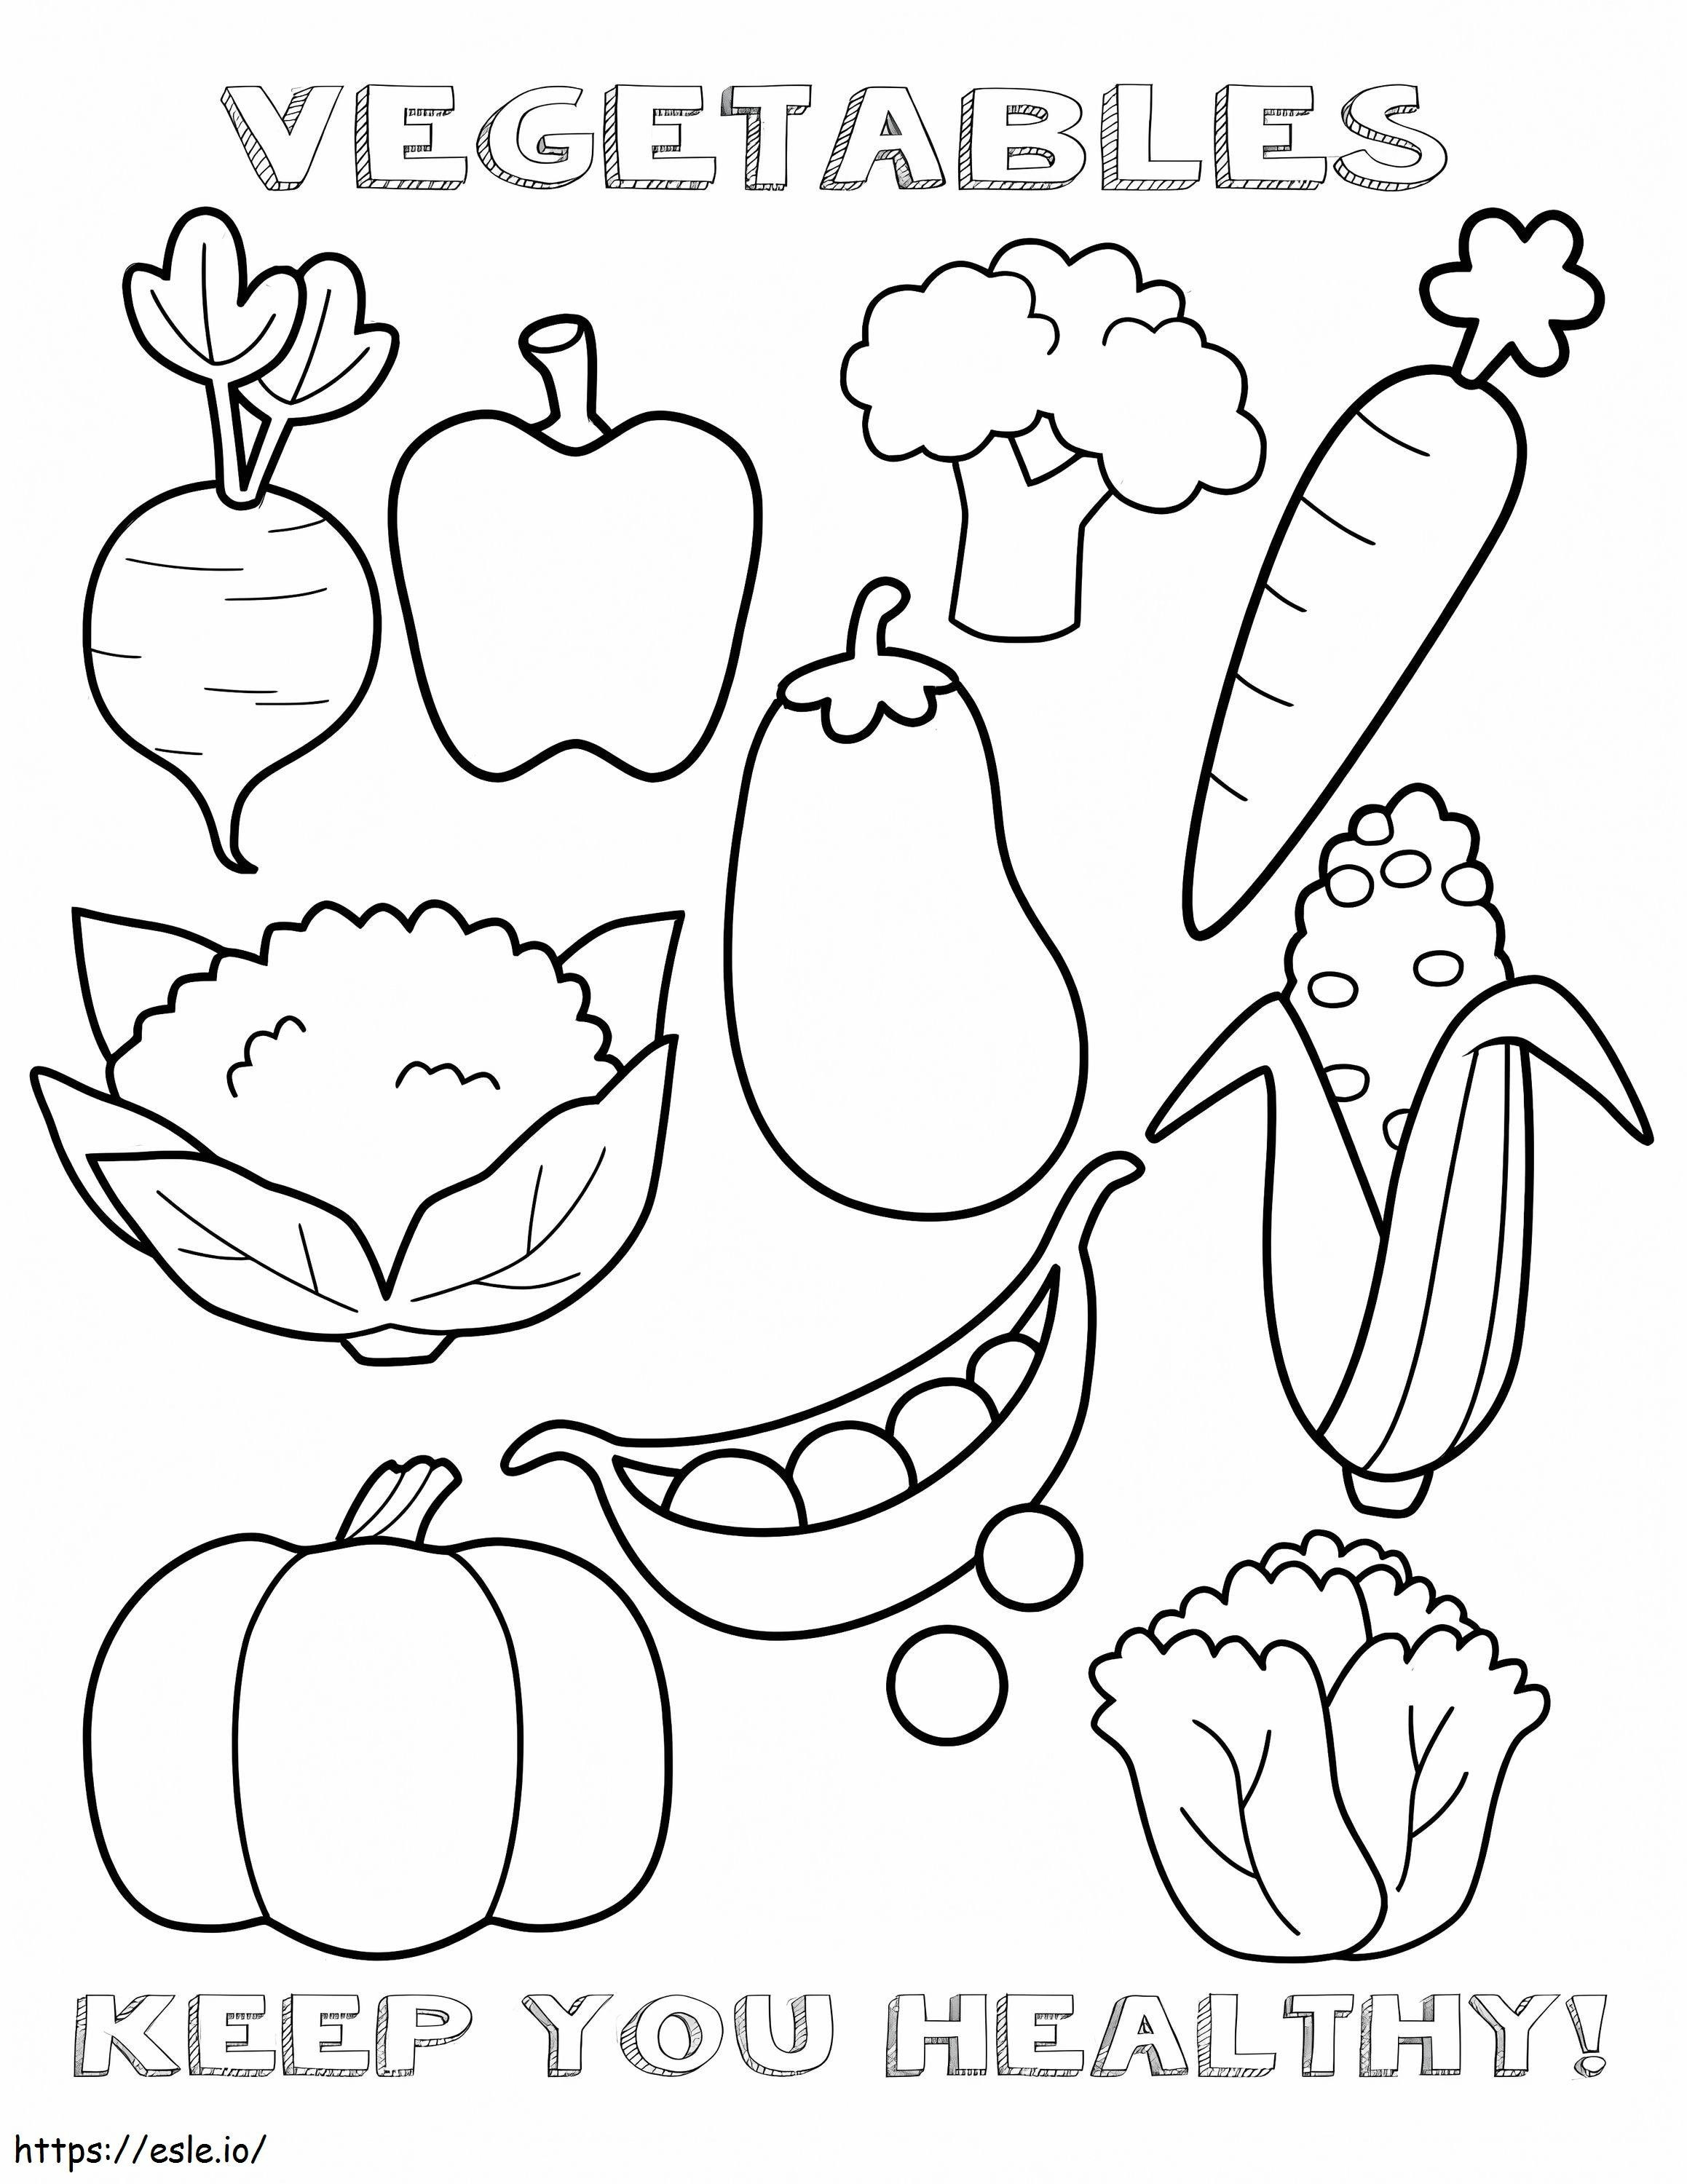 Coloriage Légumes sains à imprimer dessin